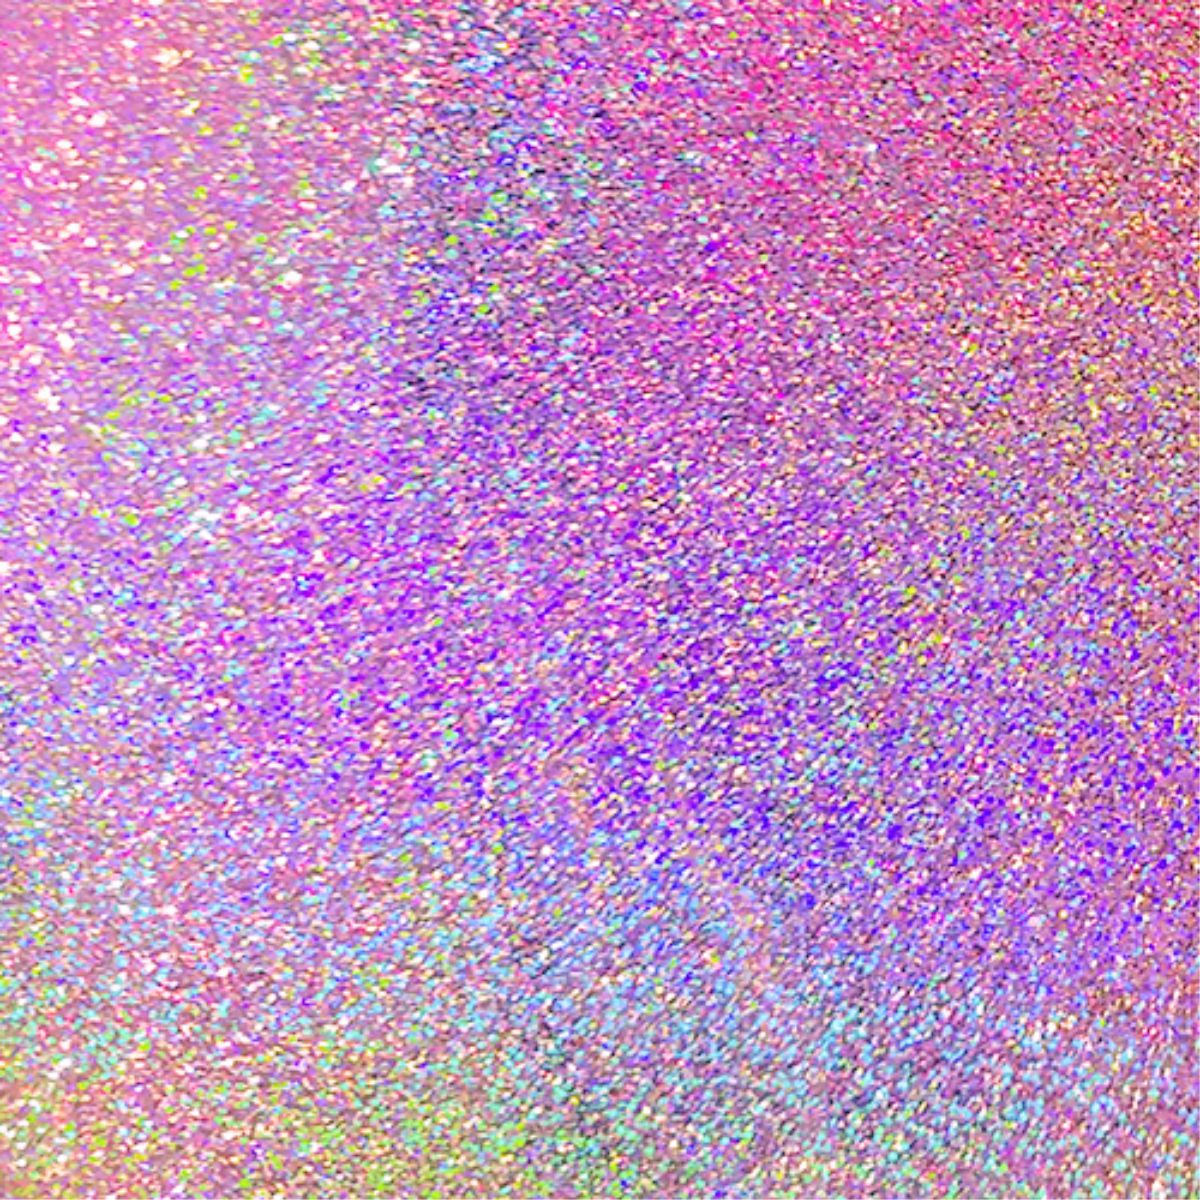 Premium Sticker - Sparkly Holographic Glitter Love Summer